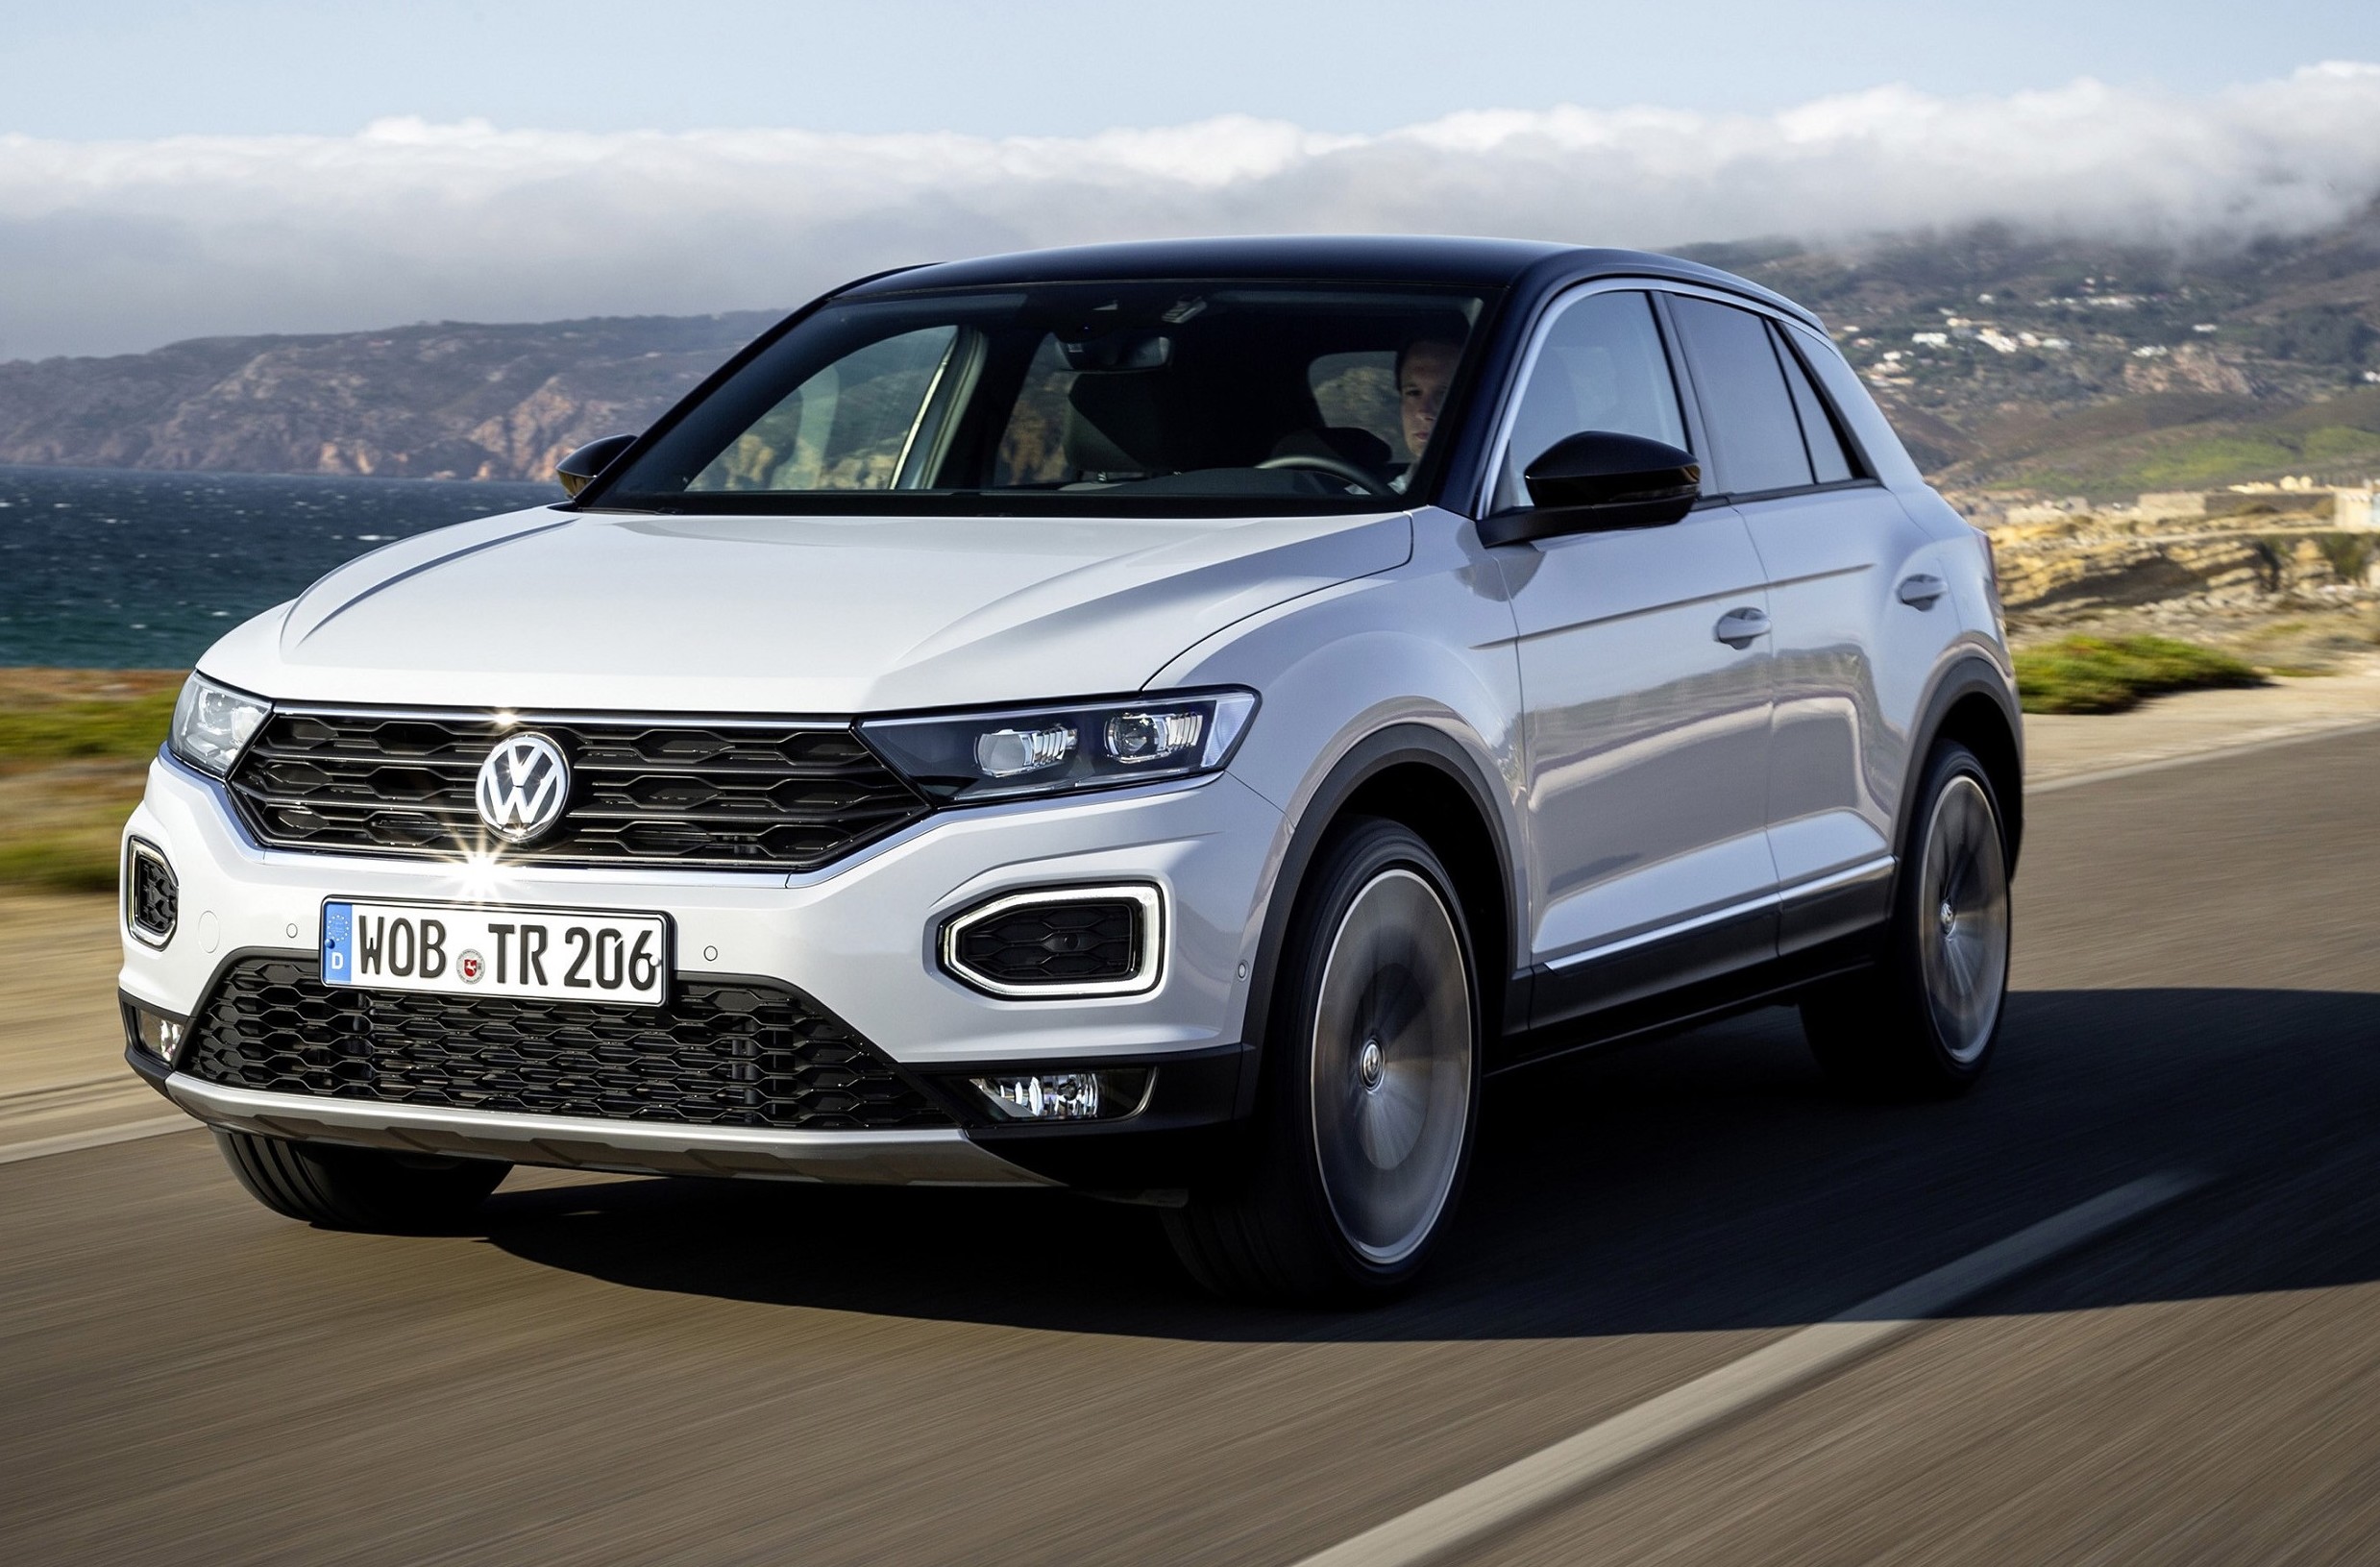 Volkswagen TRoc 2019 problemi, guasti, affidabilità